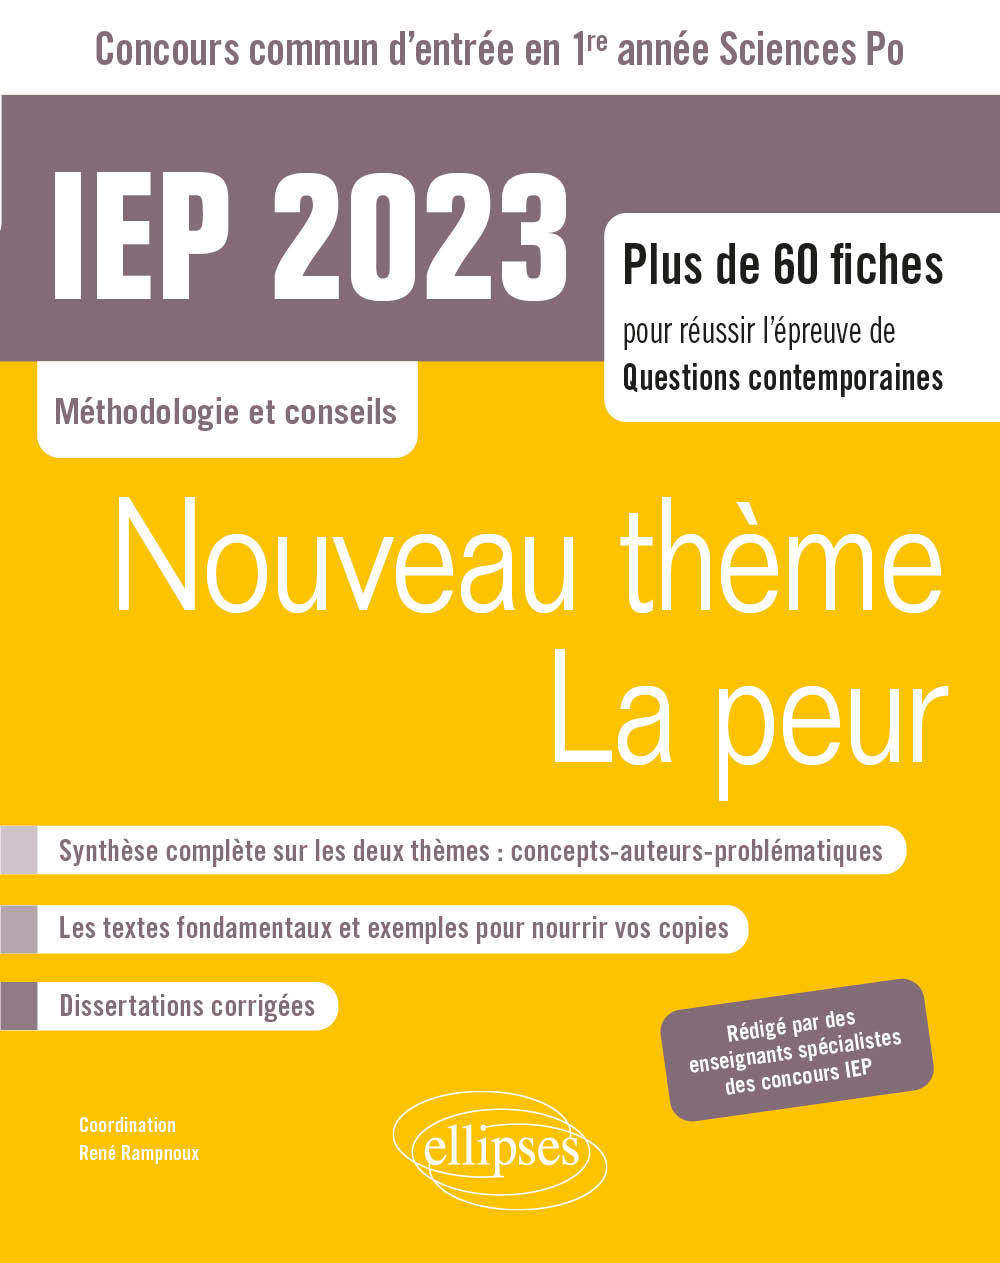 Kniha Concours commun IEP 2023 Rampnoux